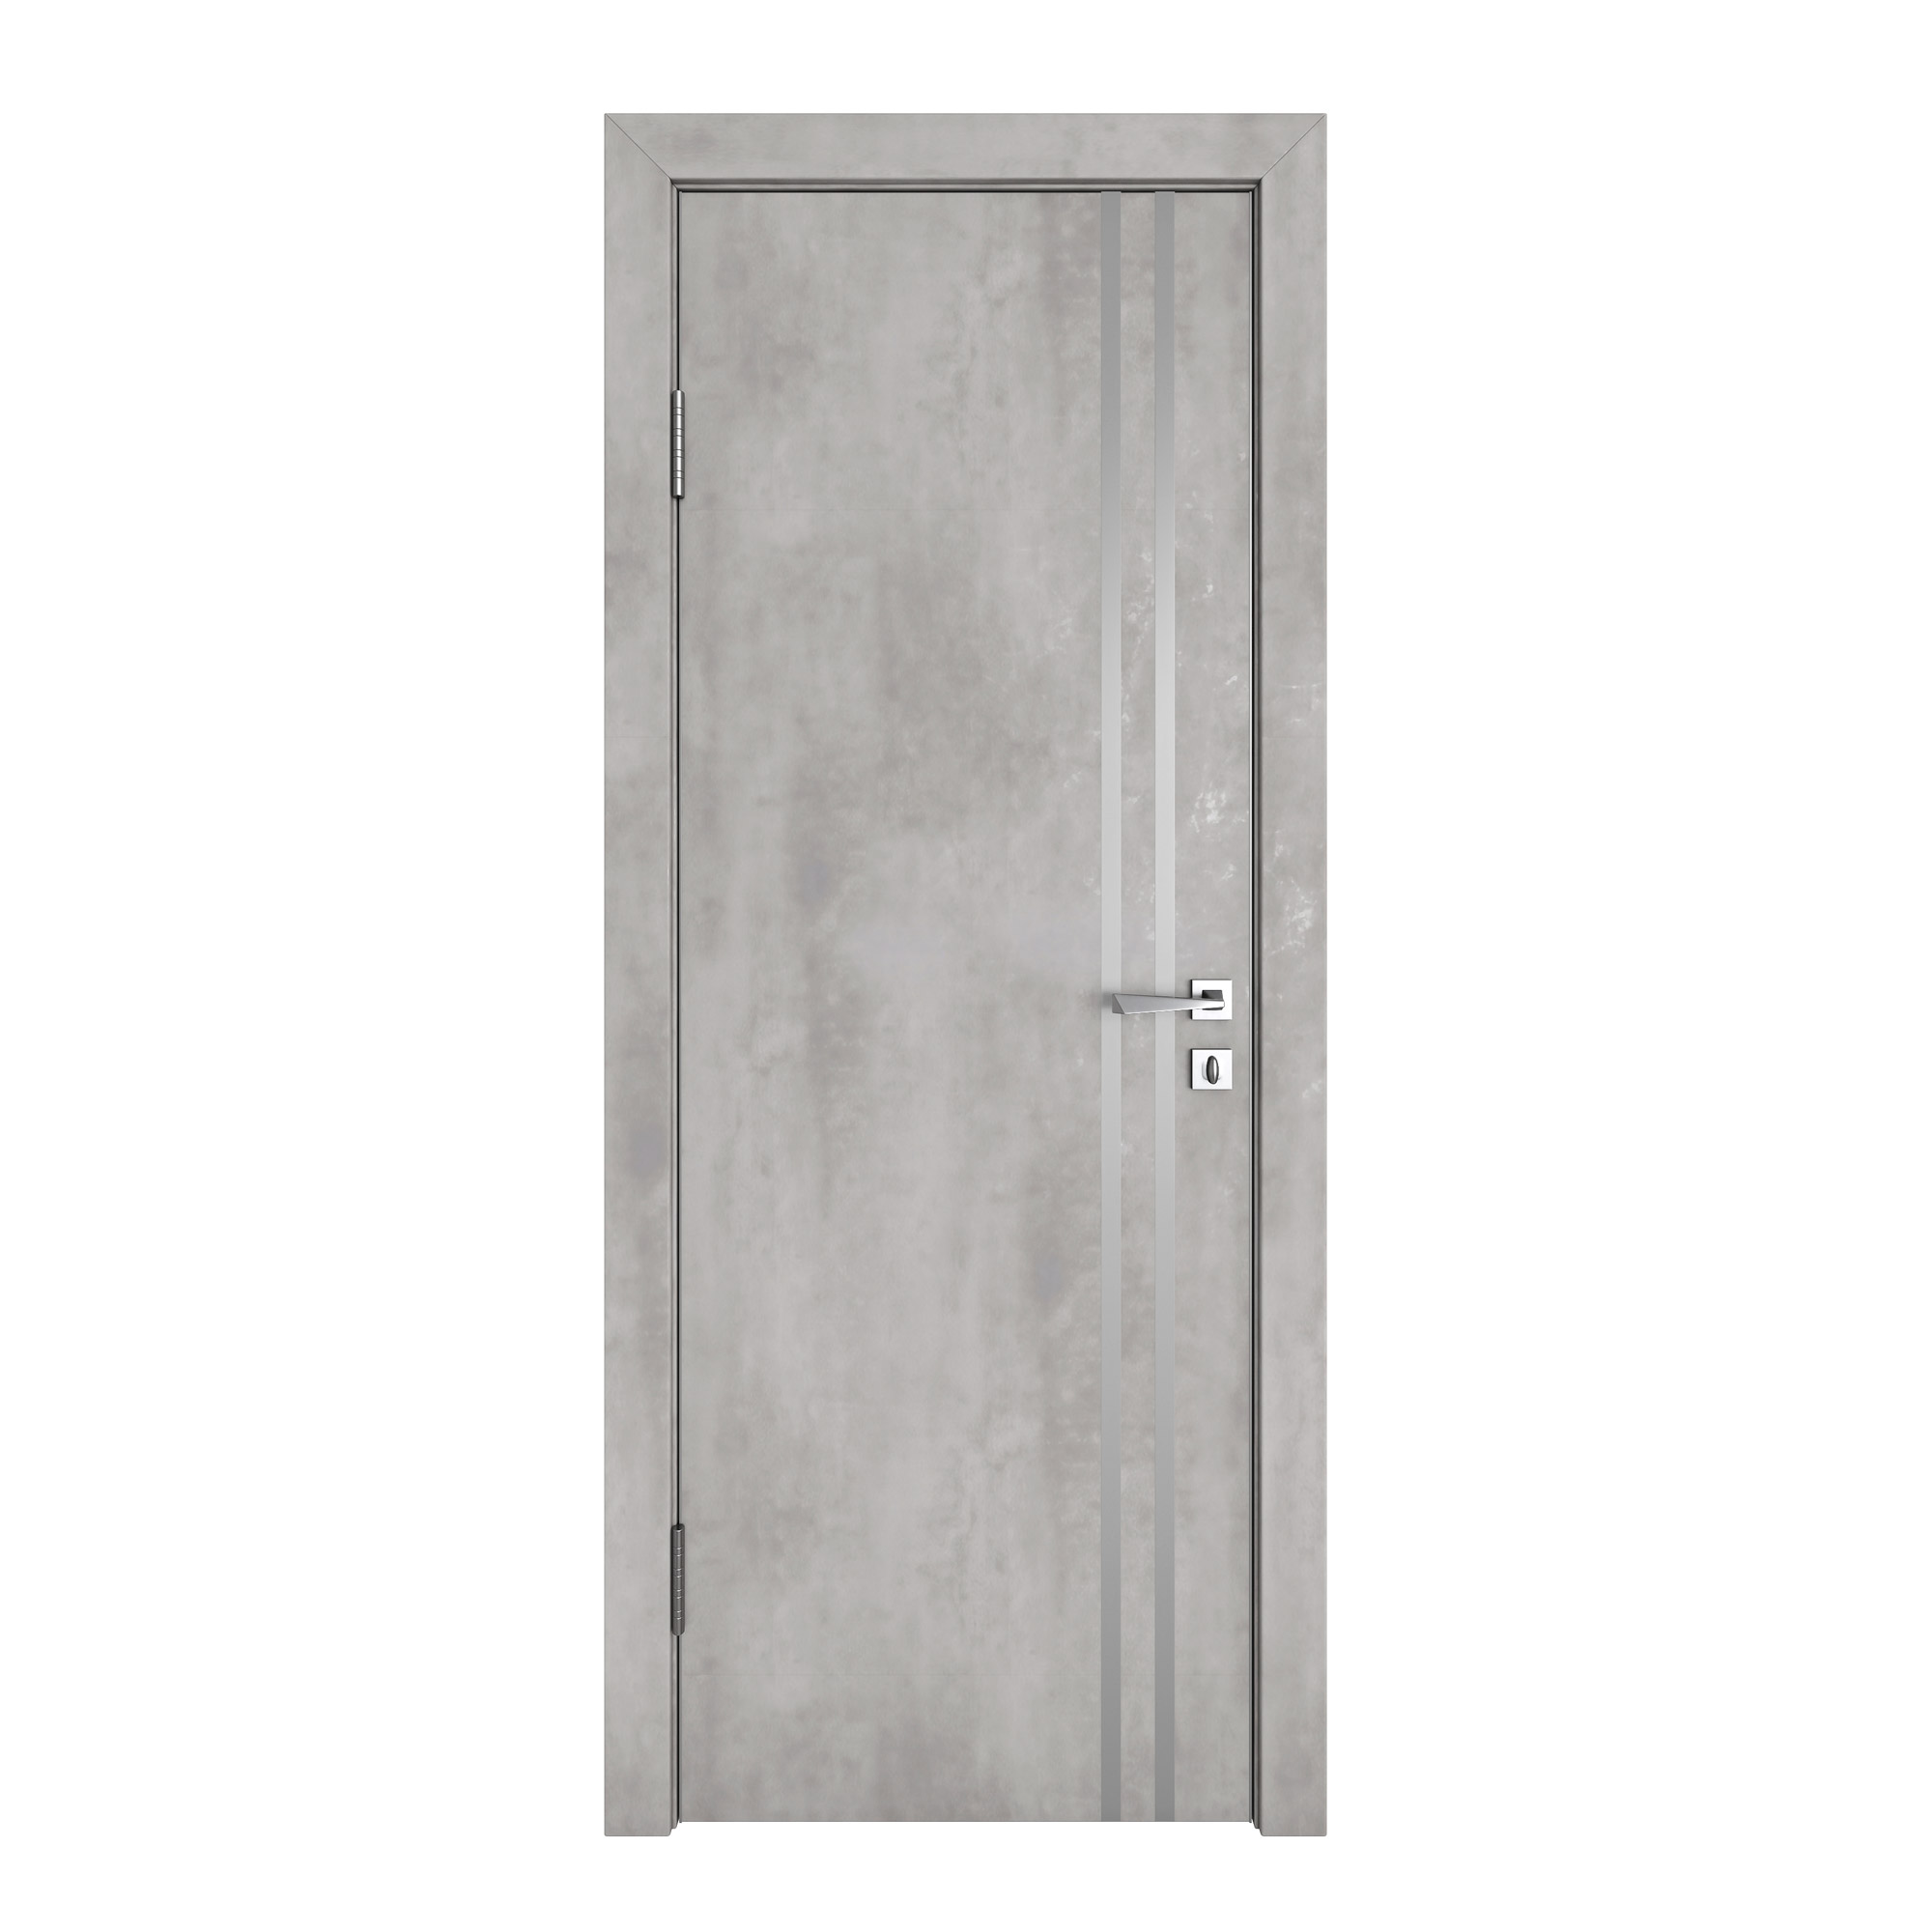 фото Межкомнатная дверь дг-506/2 бетон светлый 200х60 дверная линия